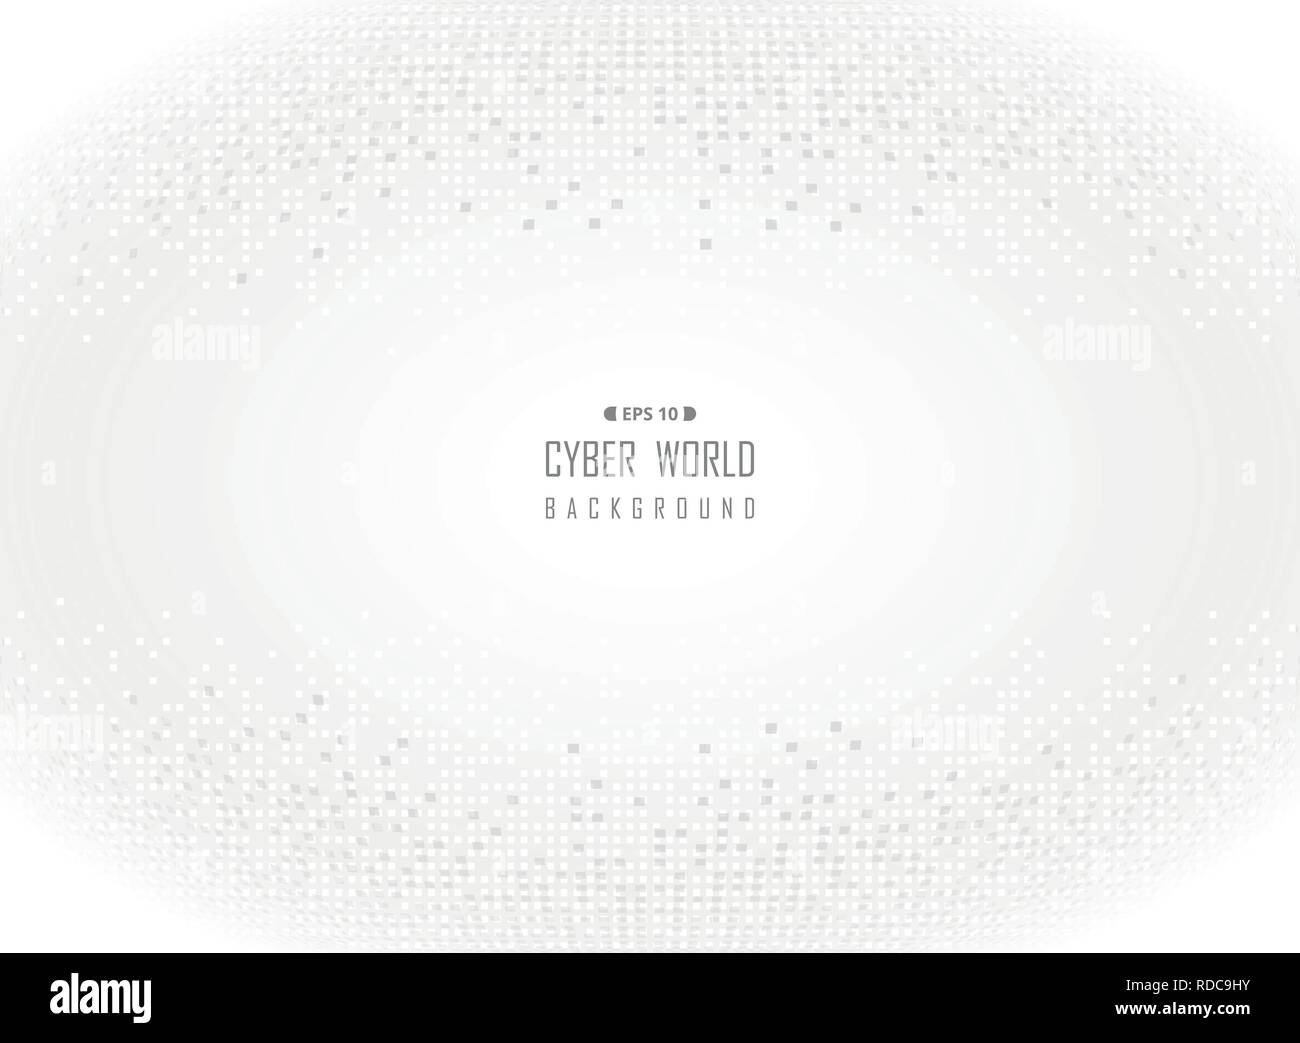 Cyber world of gray digital white background. illustration vector eps10 Stock Vector